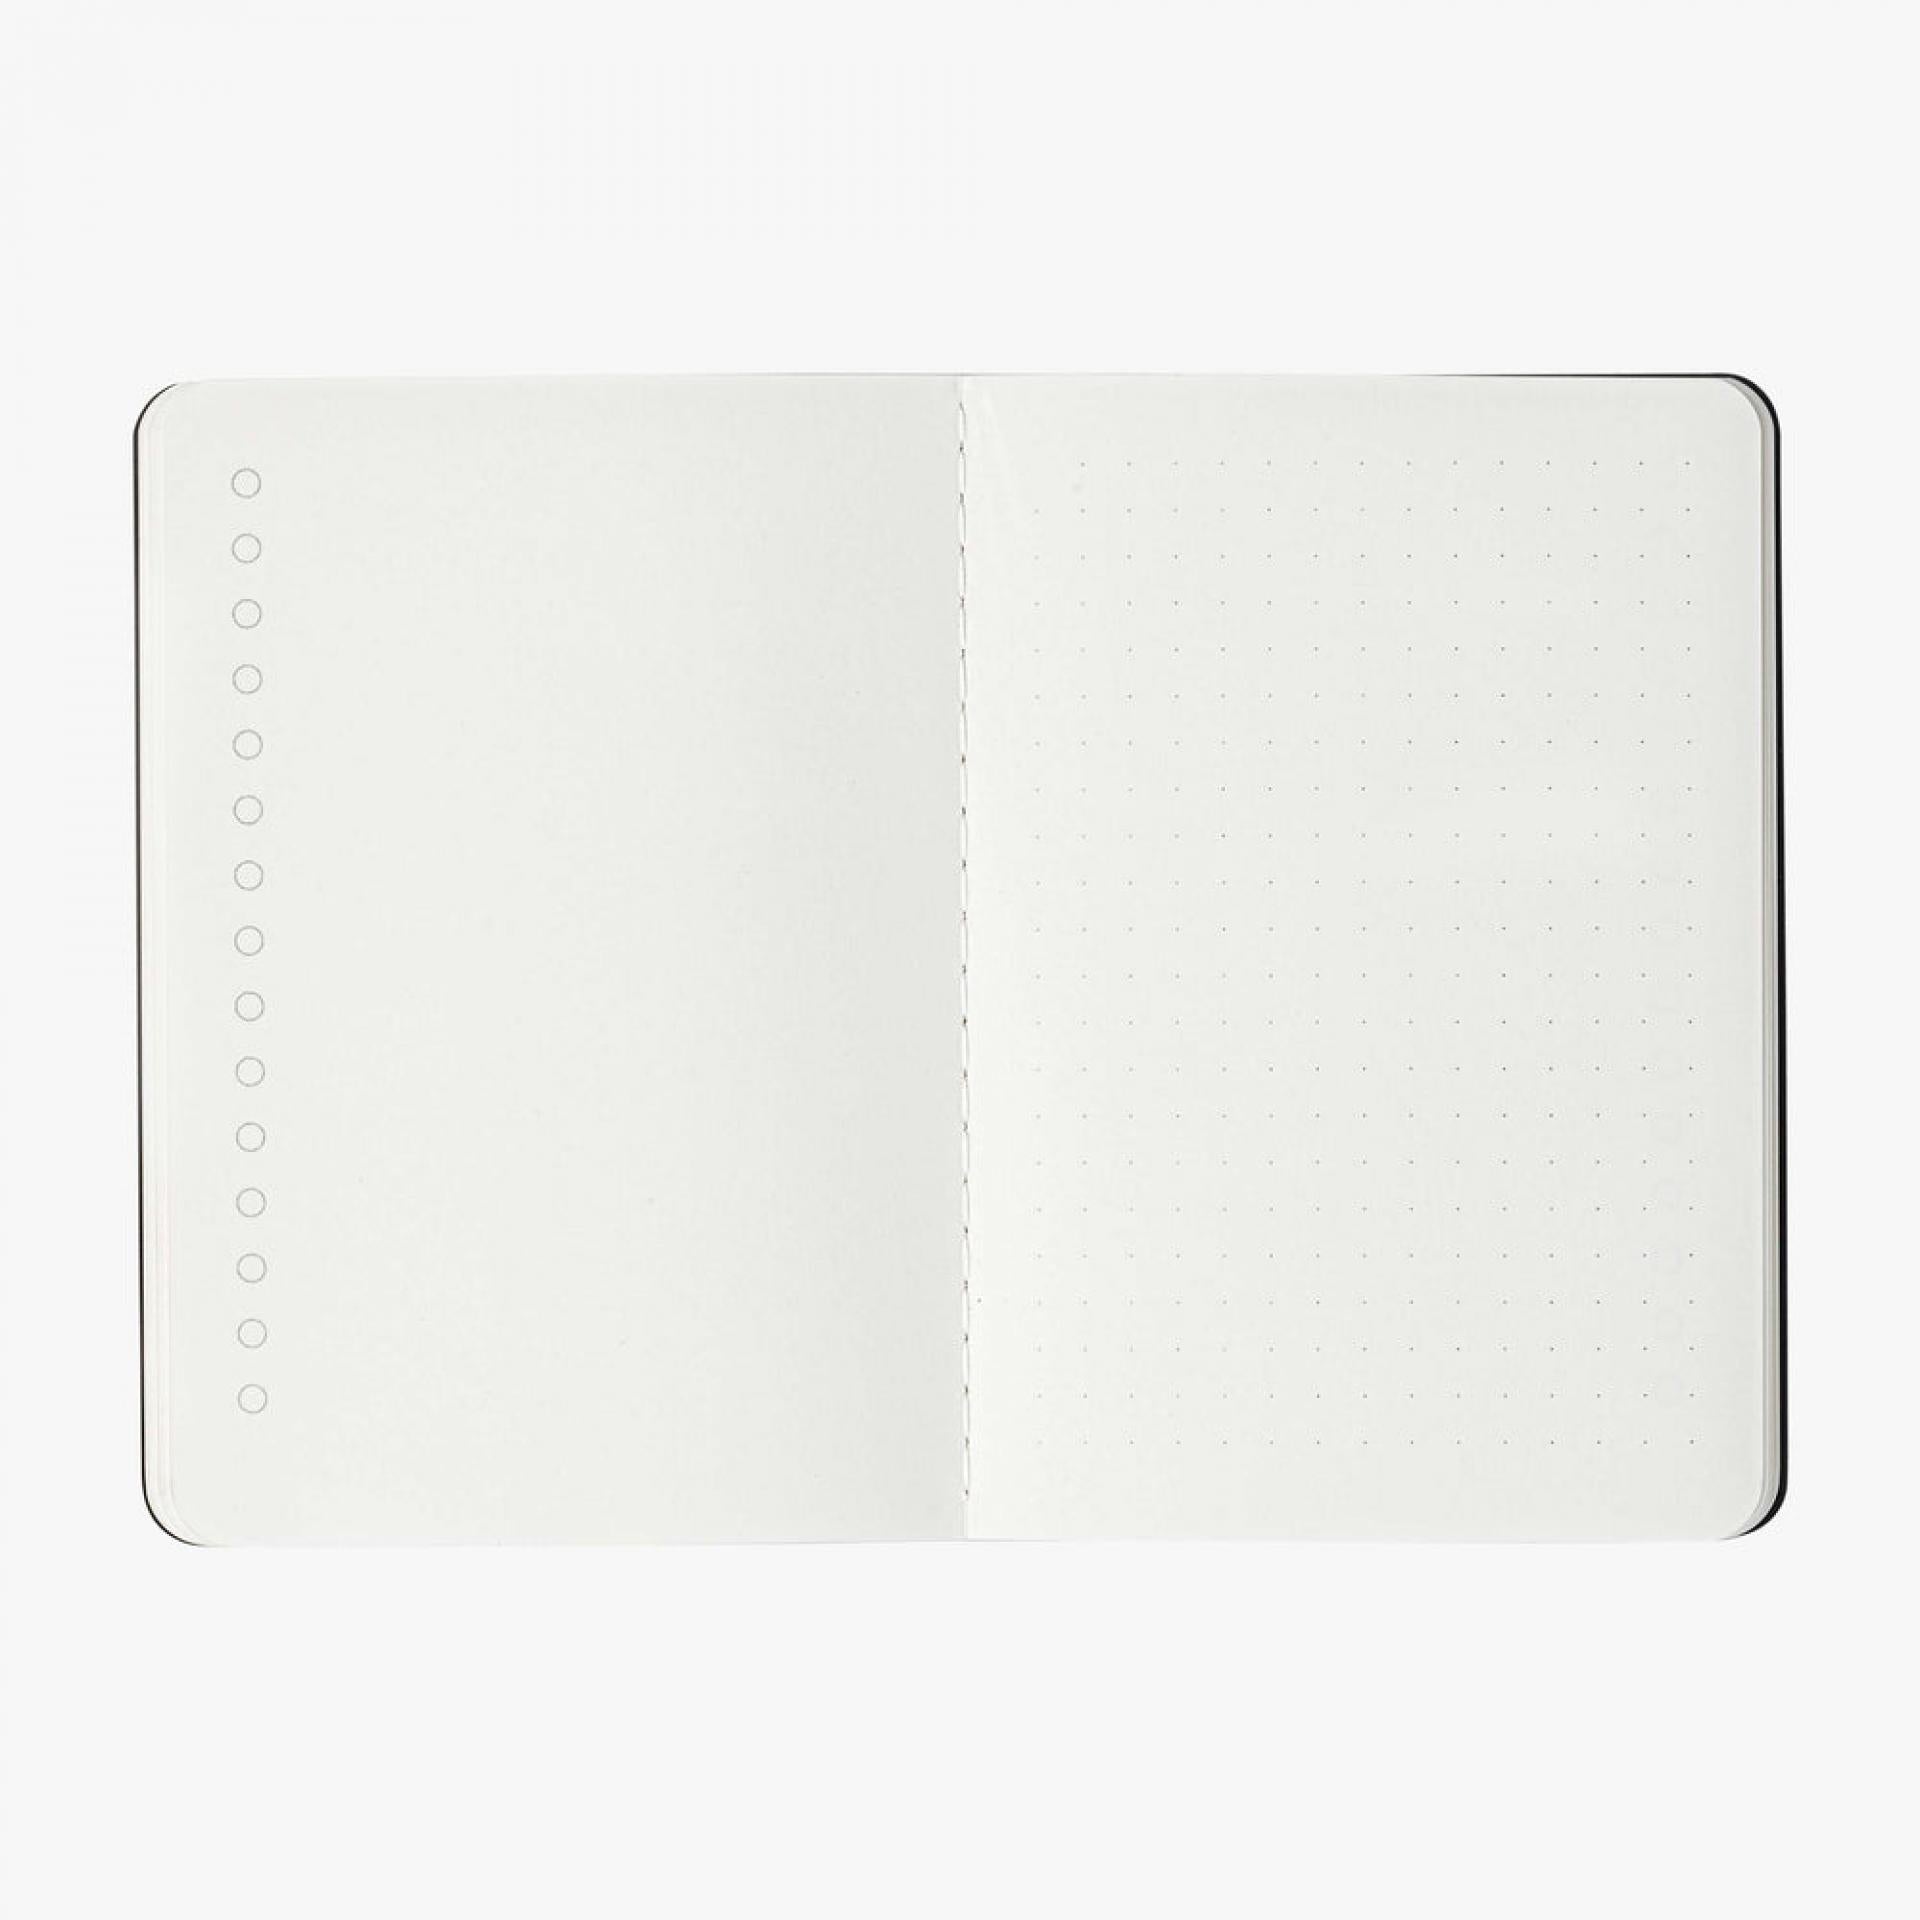 Organisation Notebook